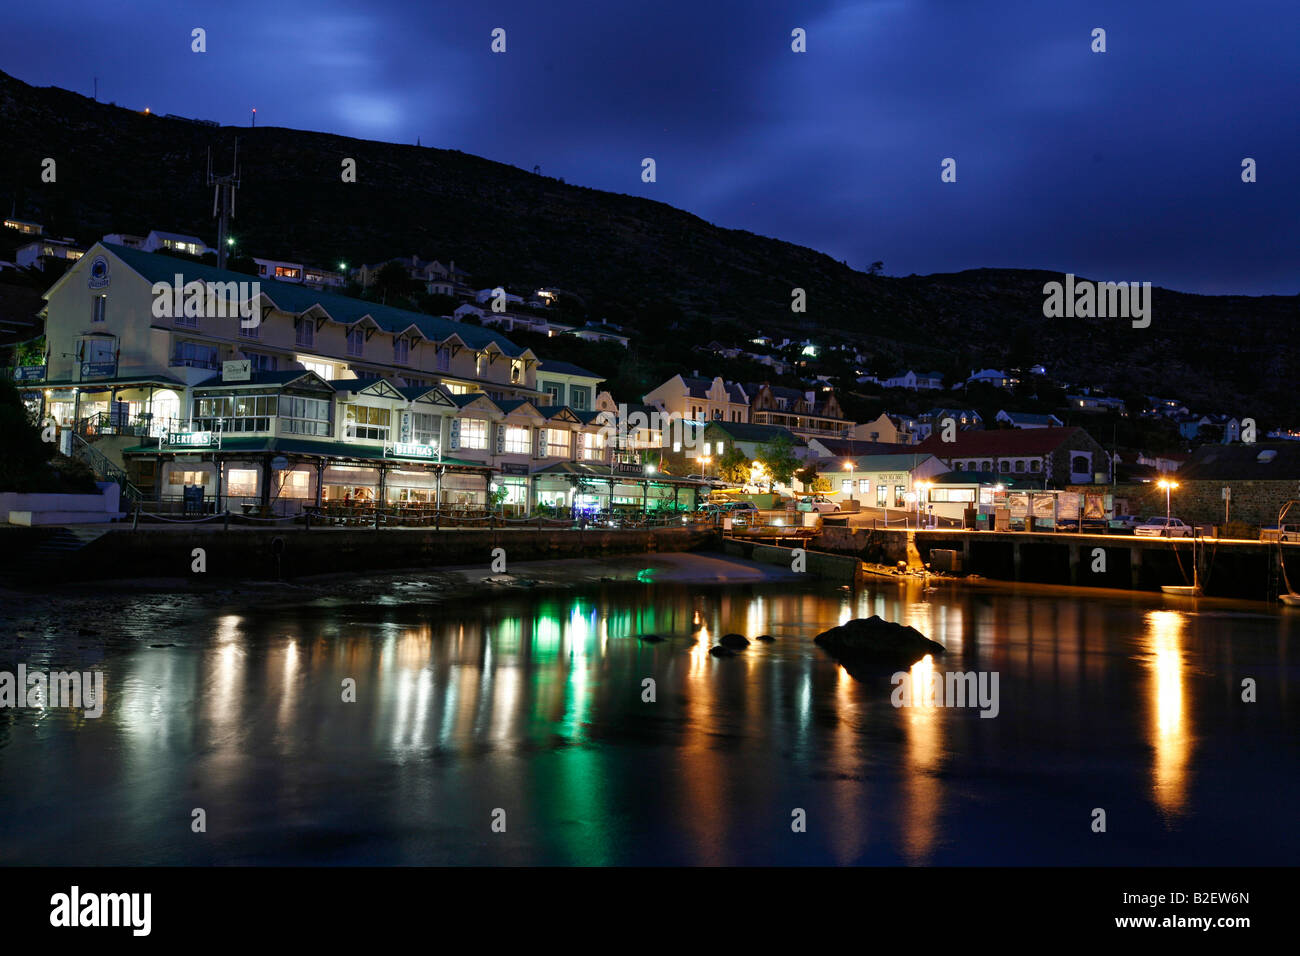 Luci riflesse in acqua durante la notte presso la città di Simon waterfront Foto Stock